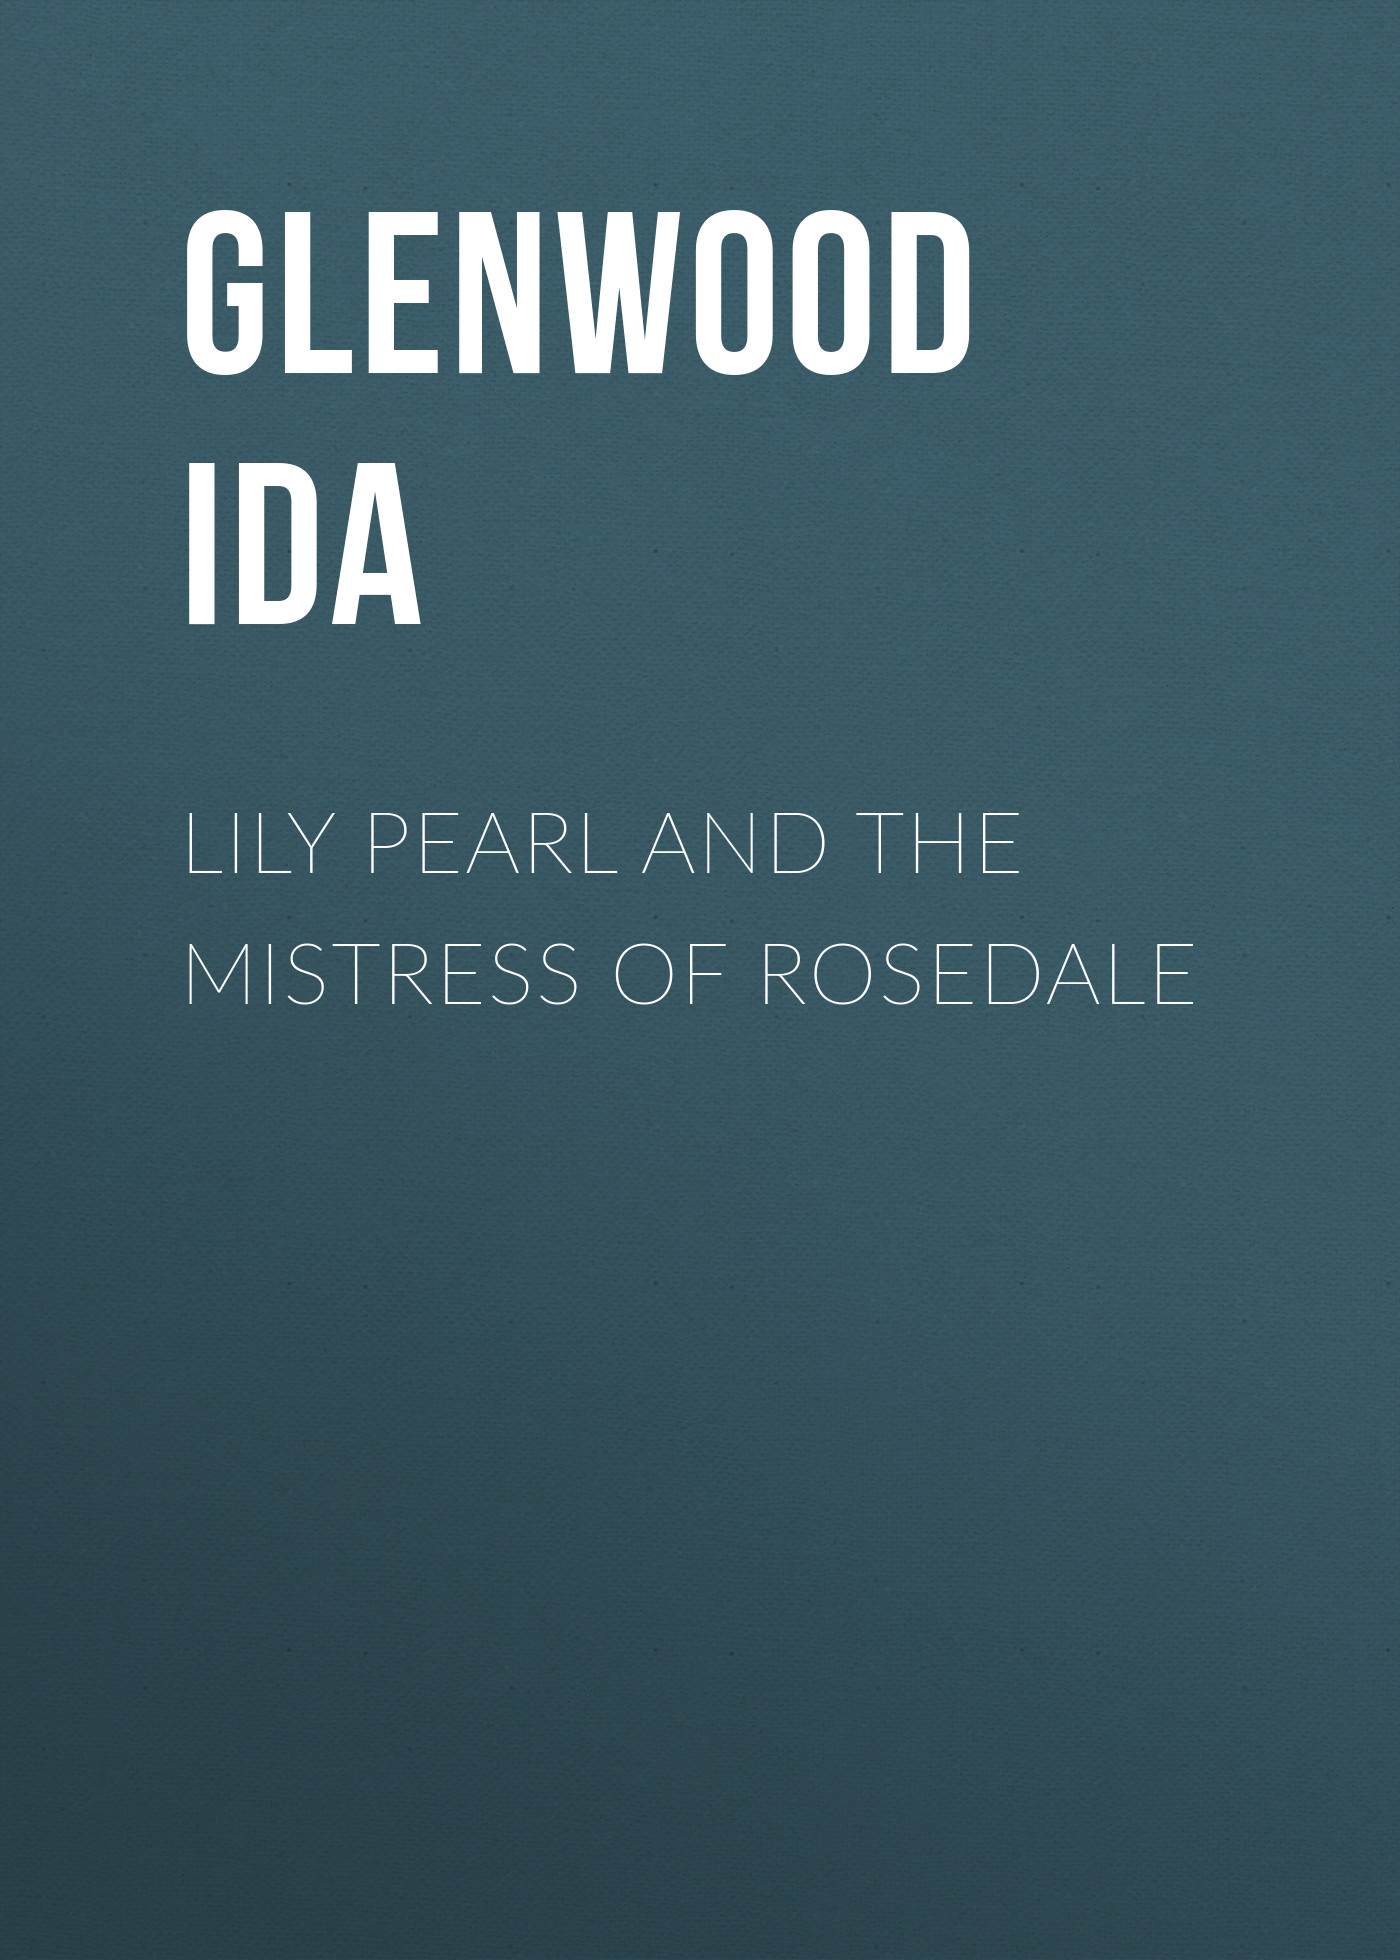 Книга Lily Pearl and The Mistress of Rosedale из серии , созданная Ida Glenwood, может относится к жанру Зарубежная старинная литература, Зарубежная классика, Зарубежная фантастика. Стоимость электронной книги Lily Pearl and The Mistress of Rosedale с идентификатором 24937213 составляет 0 руб.